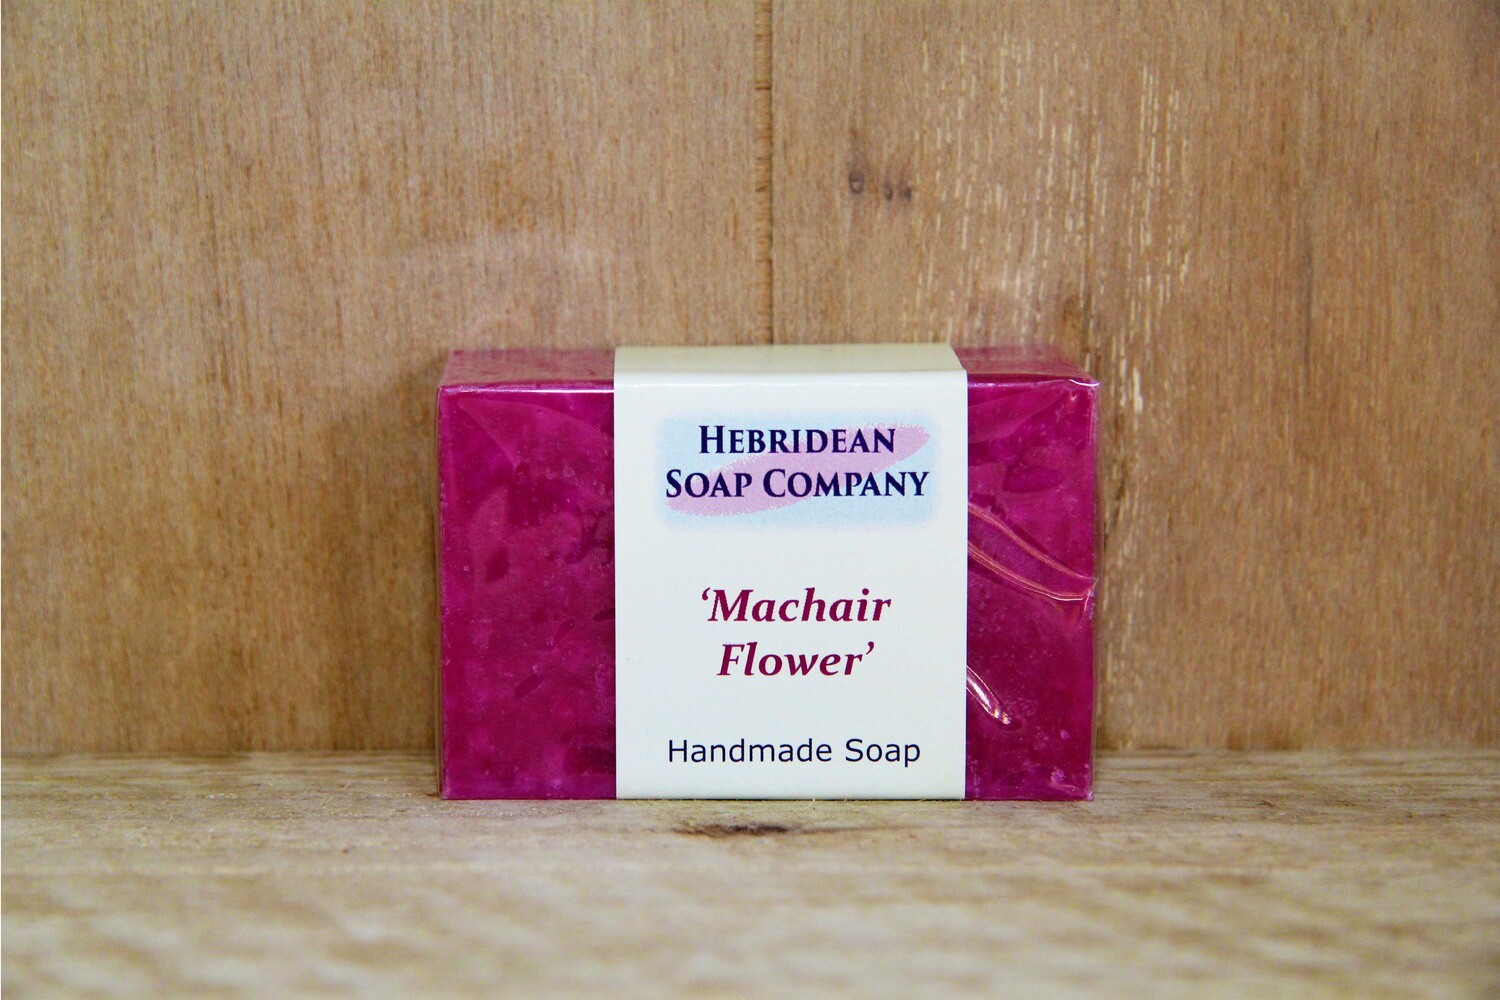 Machair flowers soap bar